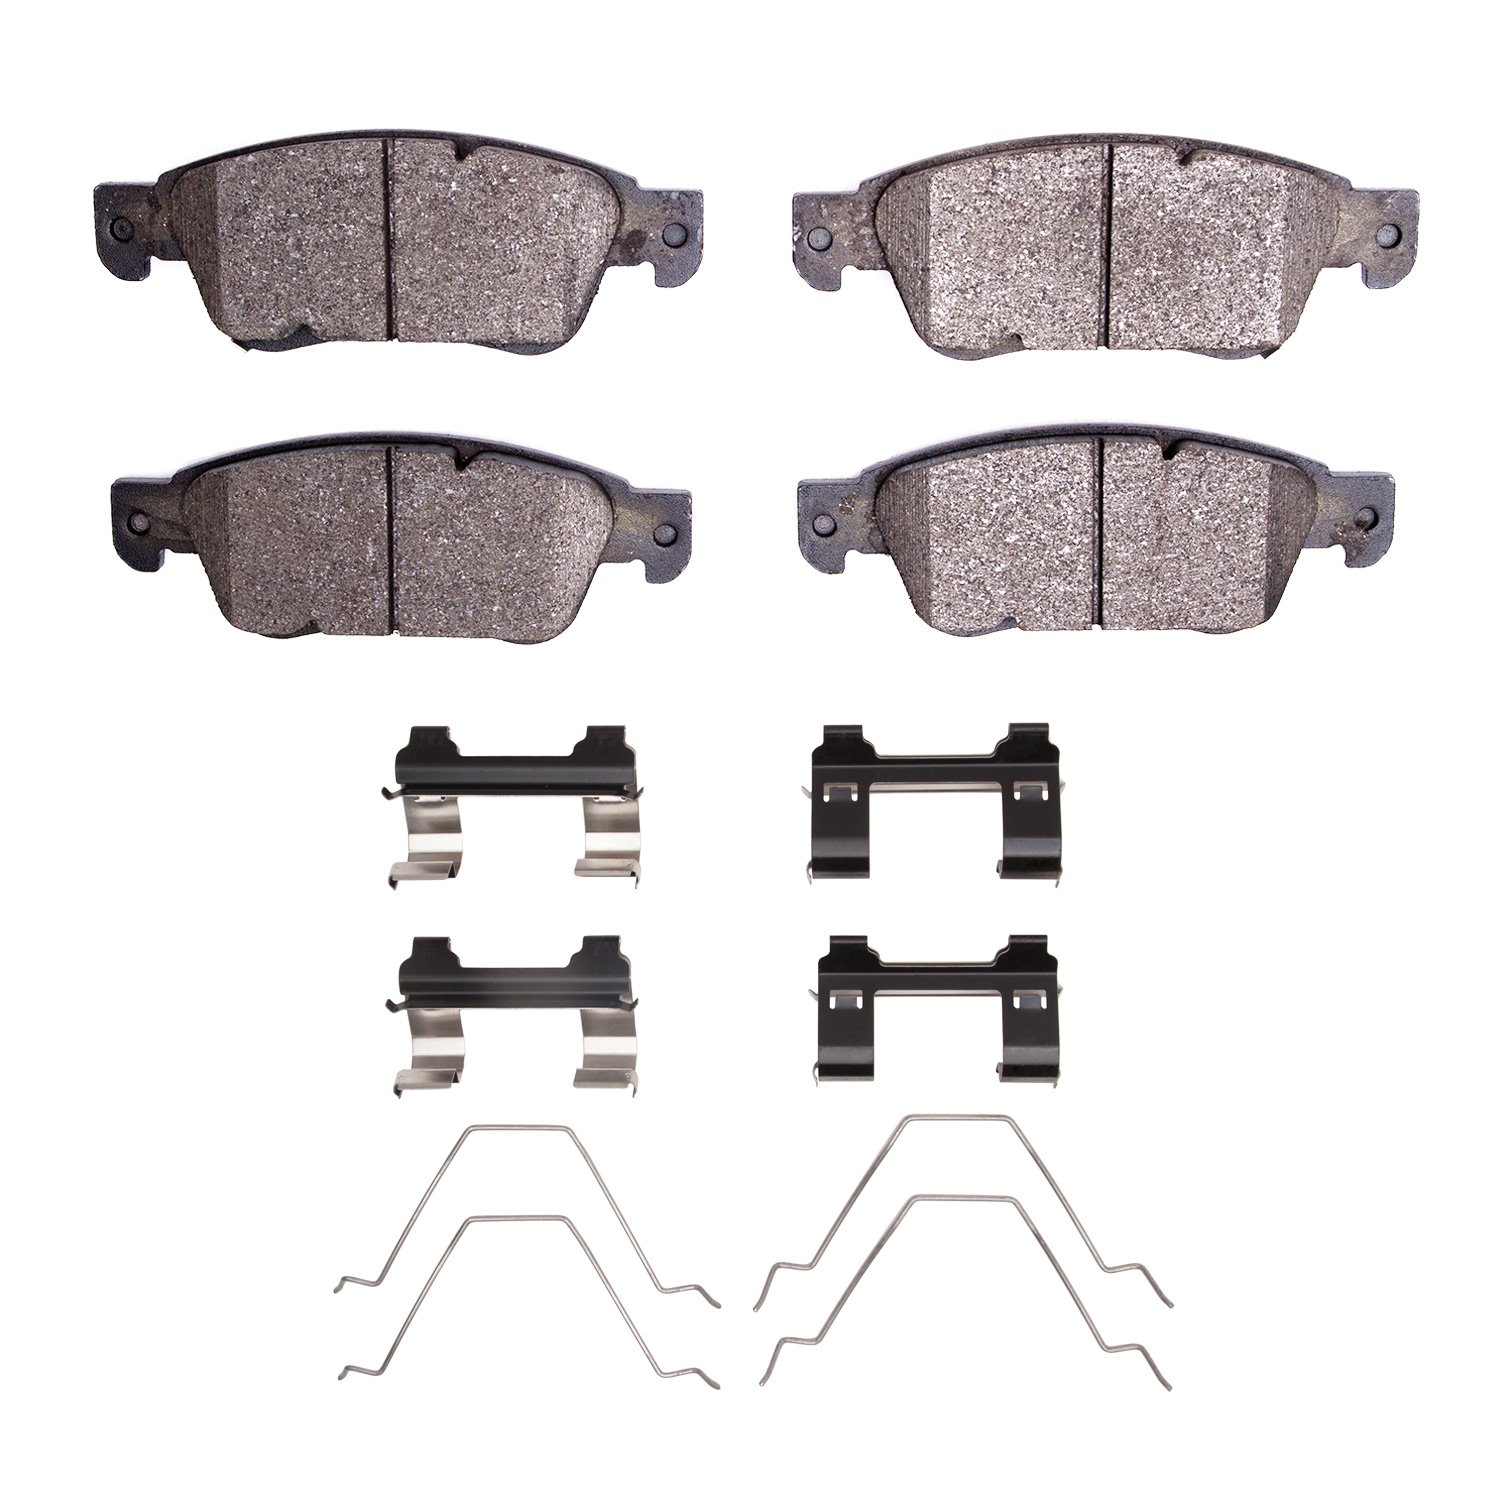 1600-1287-01 5000 Euro Ceramic Brake Pads & Hardware Kit, 2007-2015 Infiniti/Nissan, Position: Front